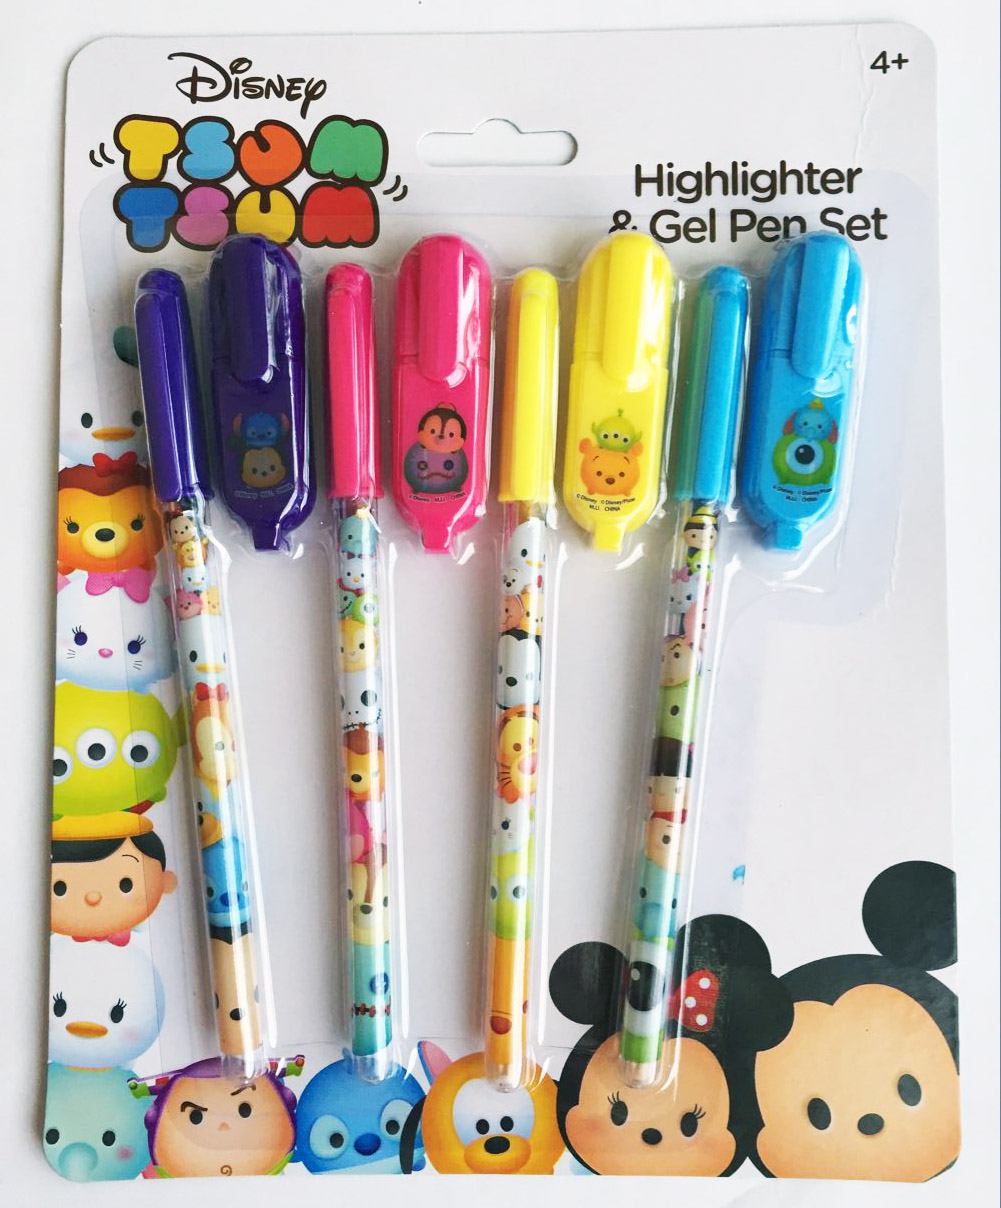 highlighter pen set,gel pen set,ball pen,ball pen set-HIGHLIGHTER AND GEL PEN SET-Stationery se